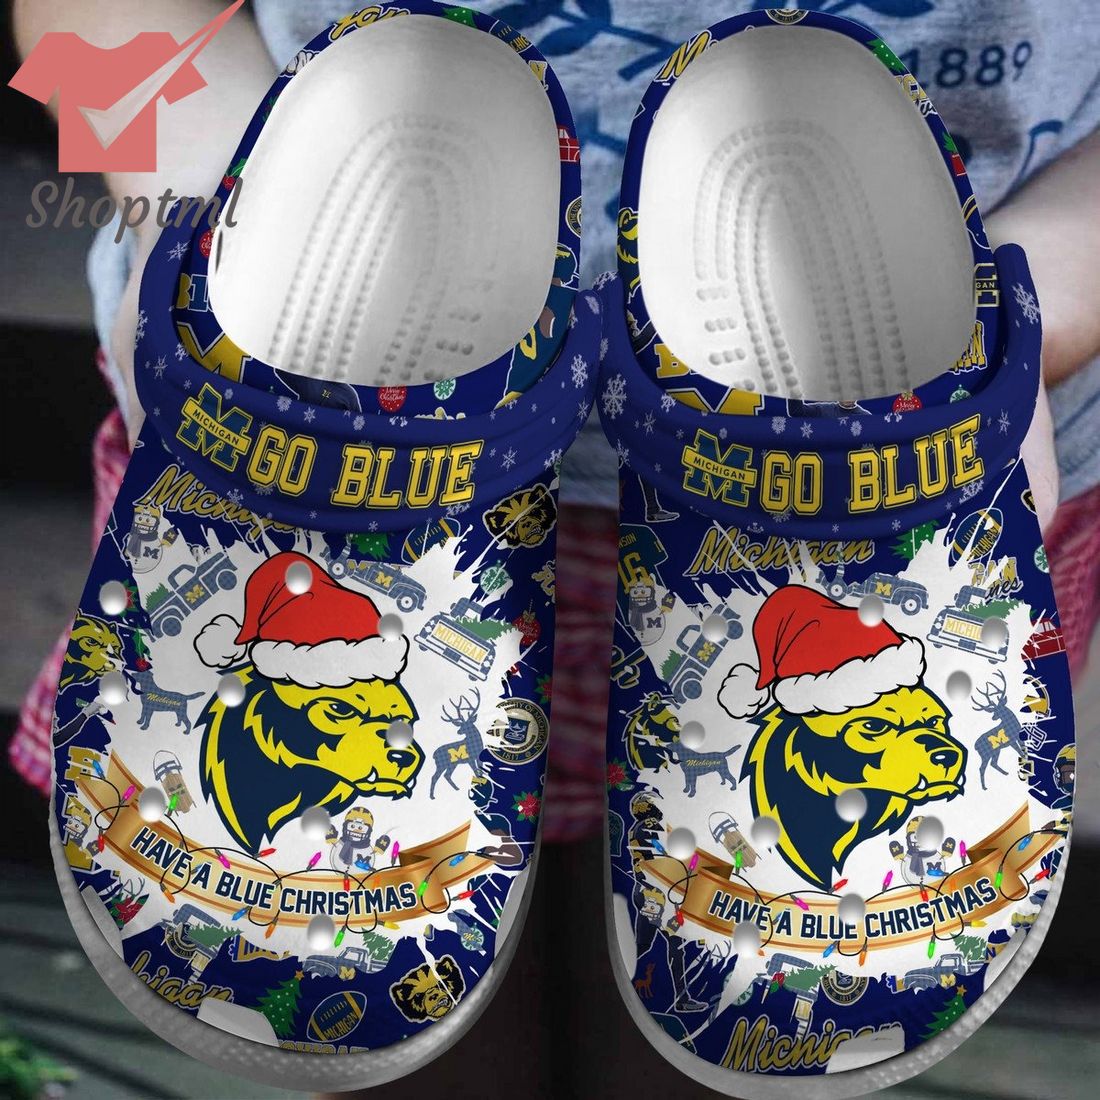 Michigan Wolverines Have A Blue Chrismas Crocs Clogs